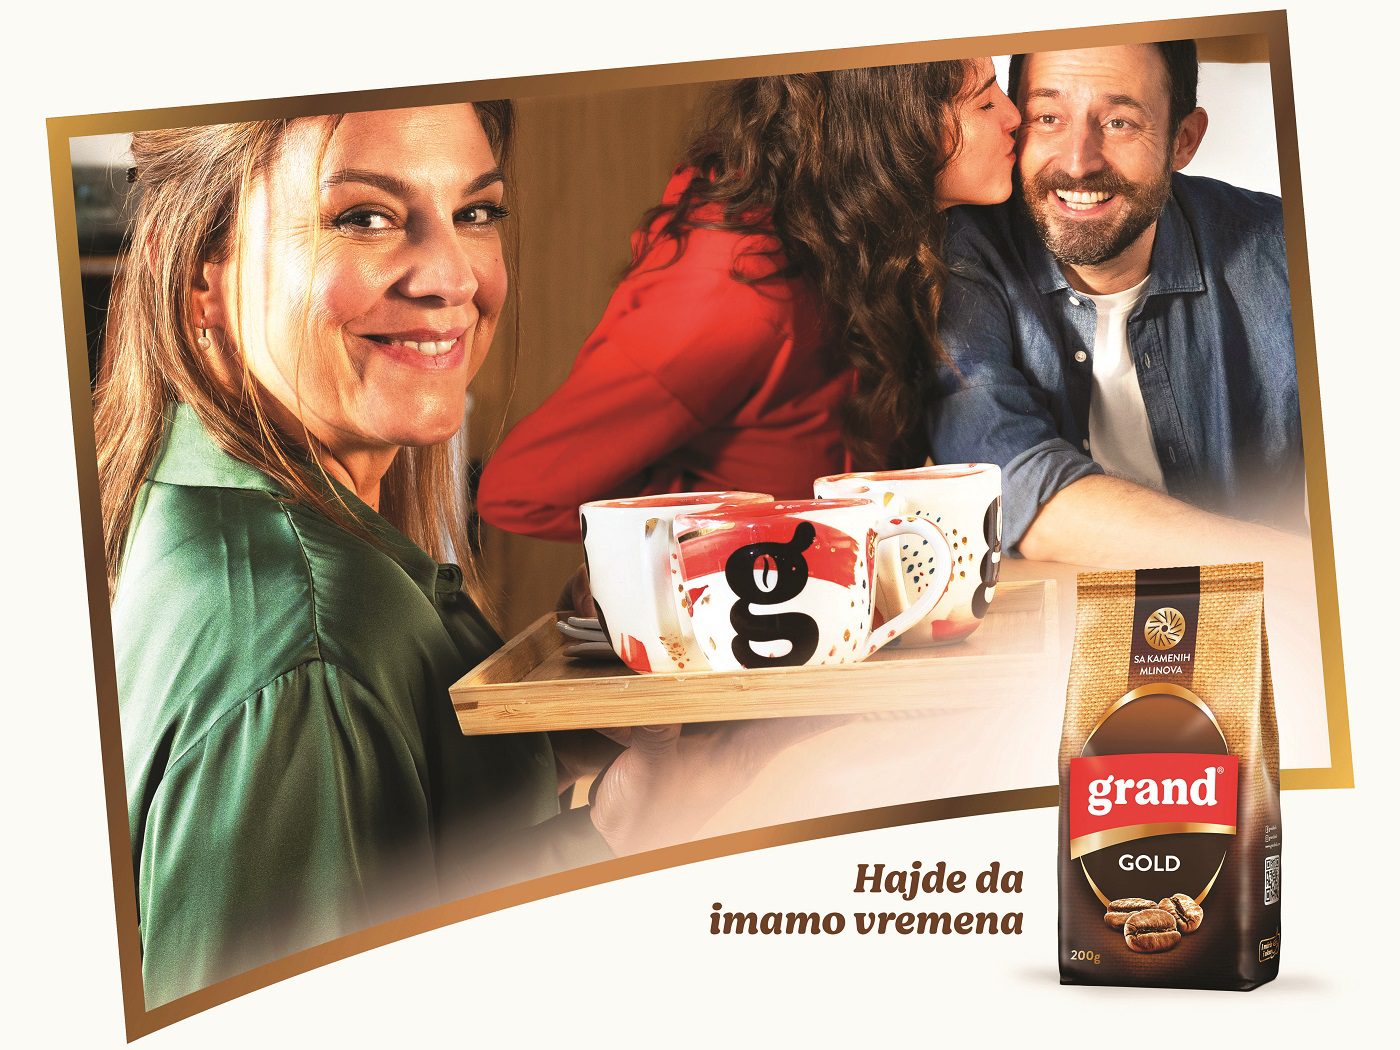 Grand kafa reklama, Nikola Đuričko, Isidora Minić i Iva Ilinčić